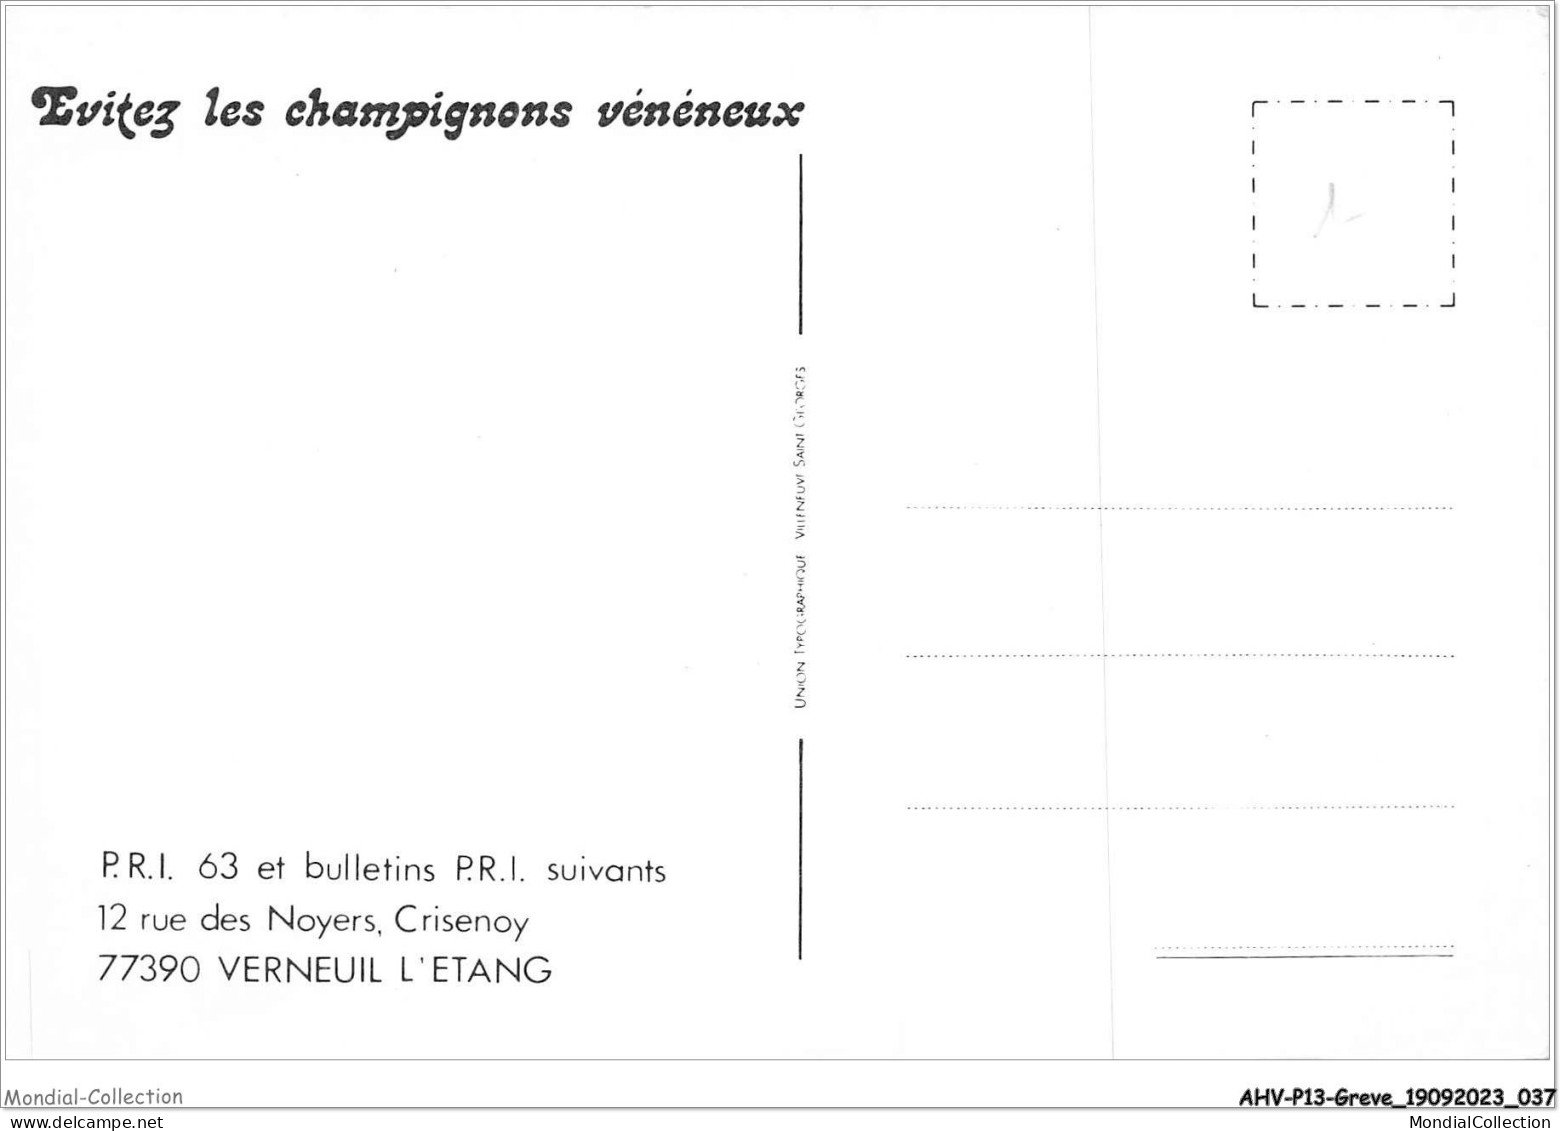 AHVP13-1132 - GREVE - Evitez Les Champignons Vénéneux  - Strikes